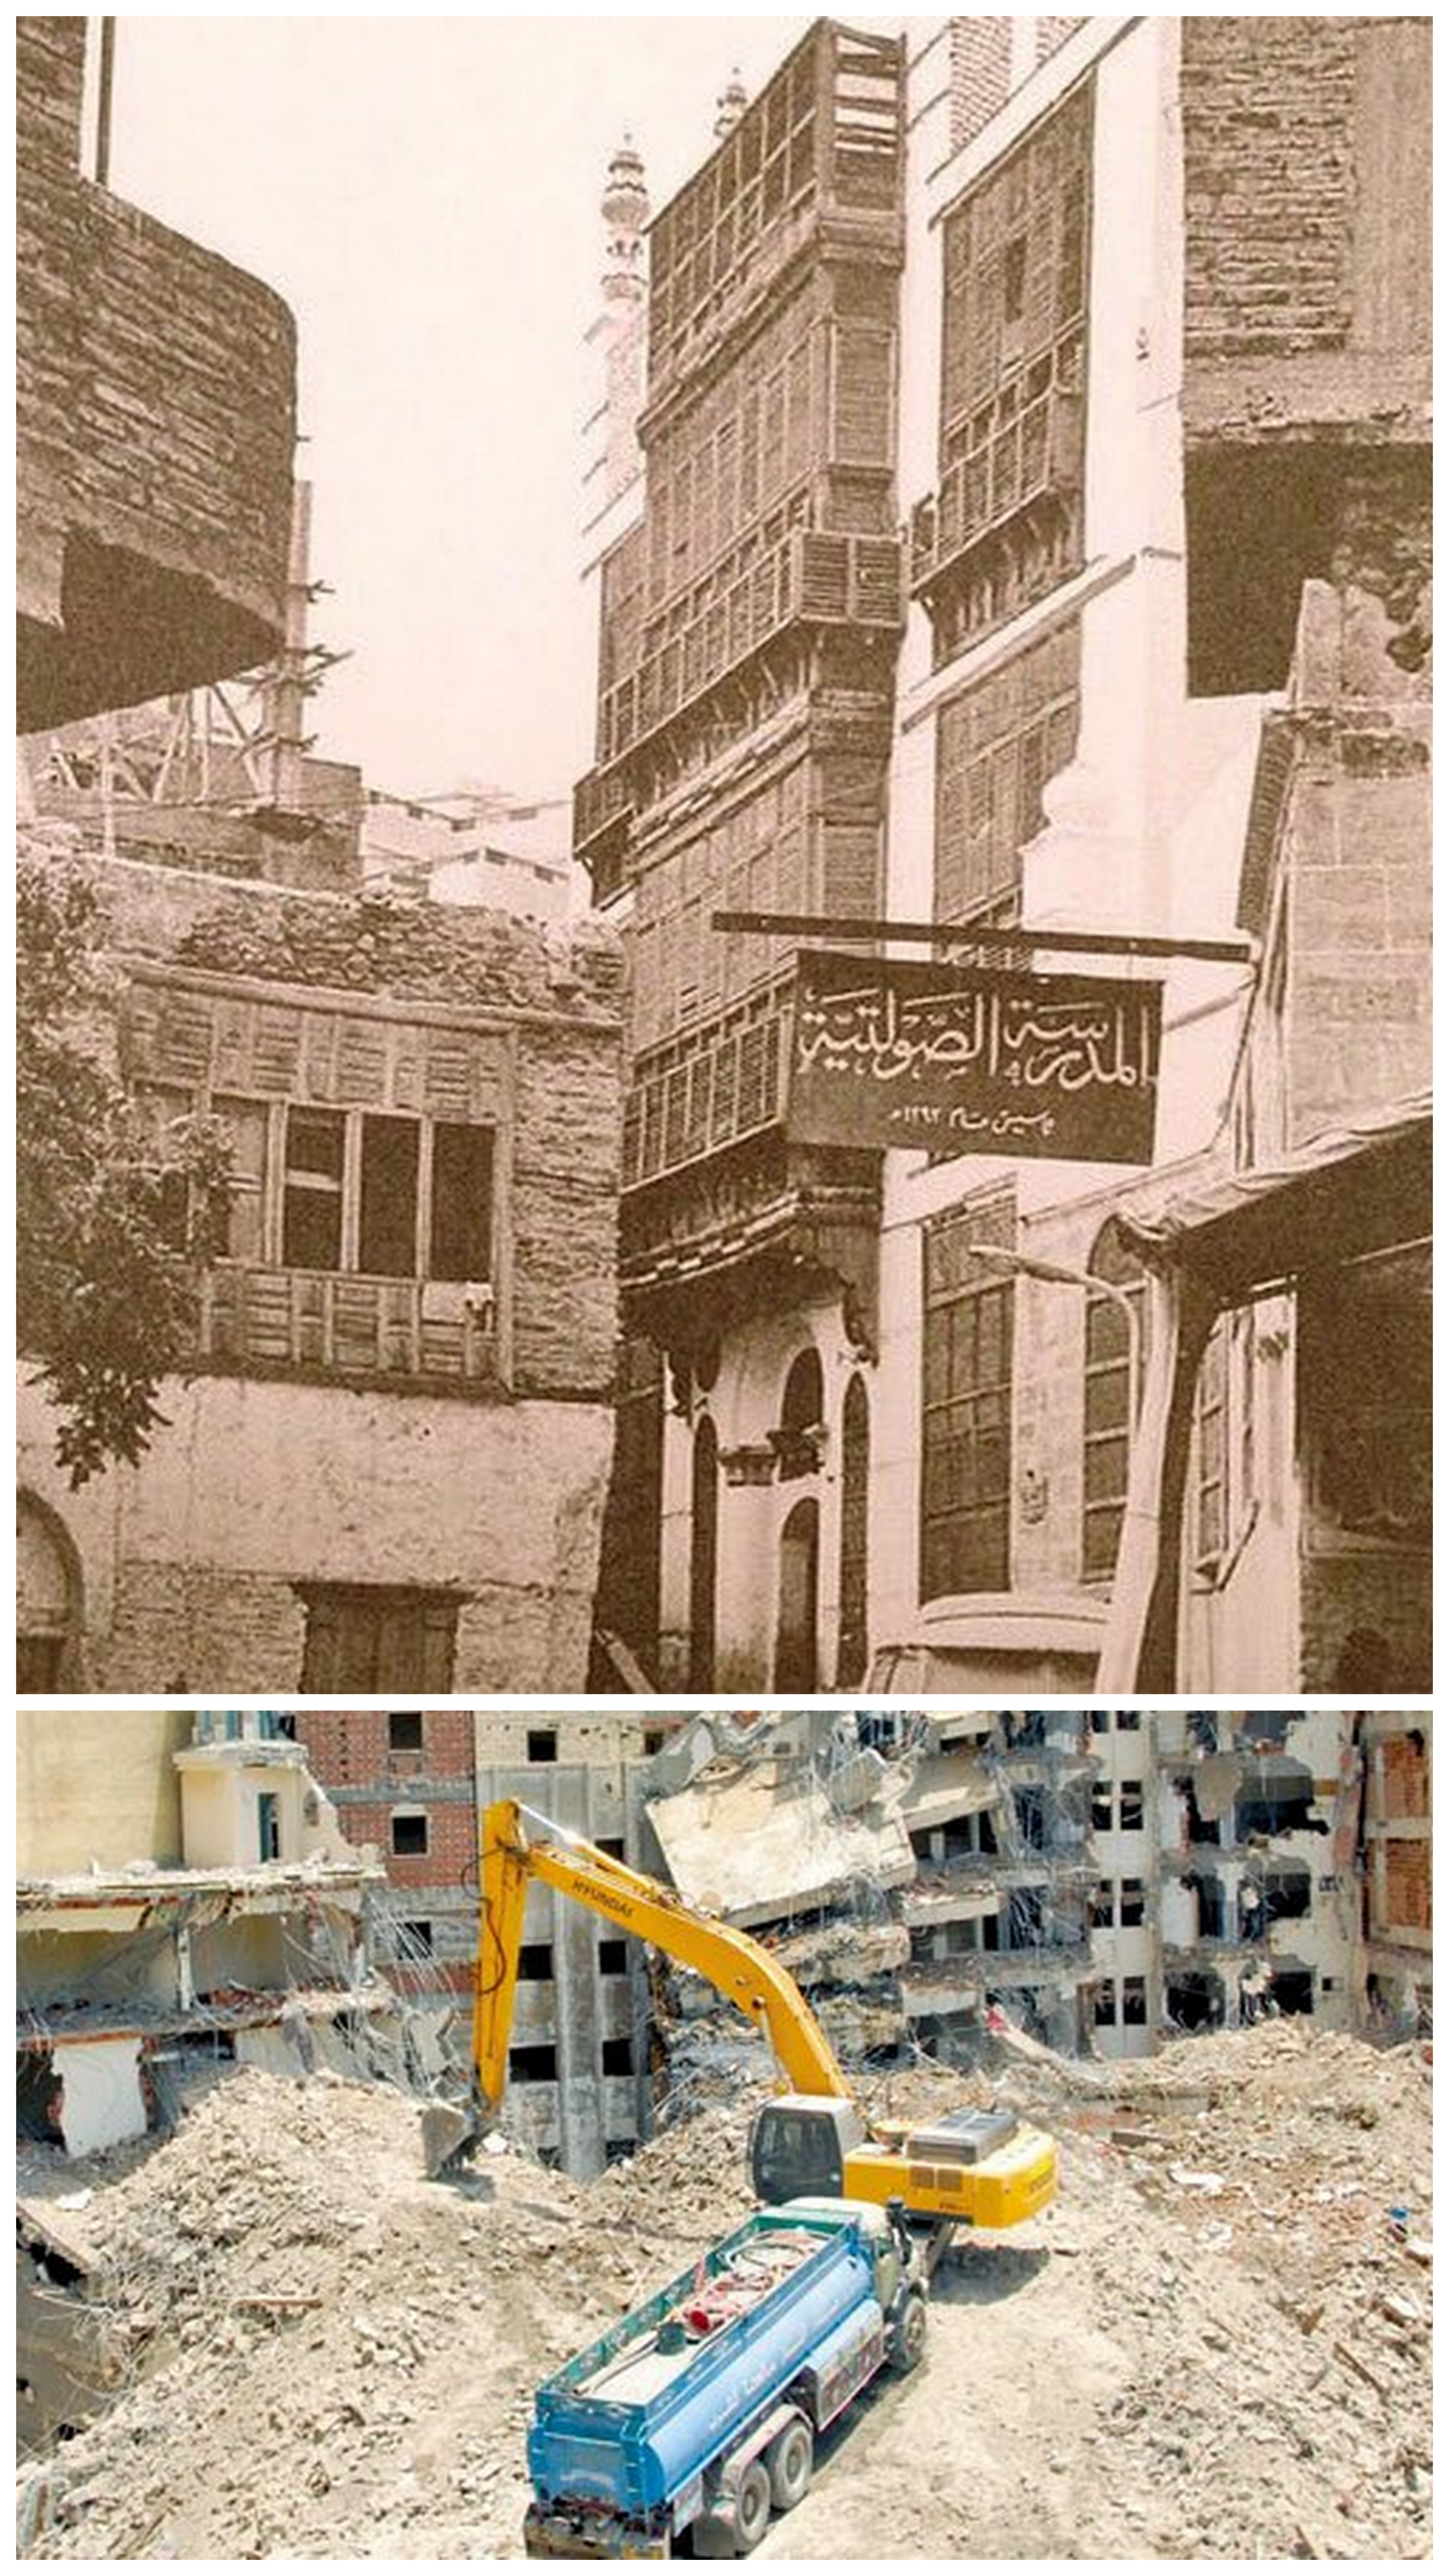 Üstteki fotoğraf Medrese-i Savletiyye'nin ayakta olduğu, alttaki fotoğraf ise Harem'i genişletme projeleri kapsamında bu yapının yok edildiği zamanı resmediyor.